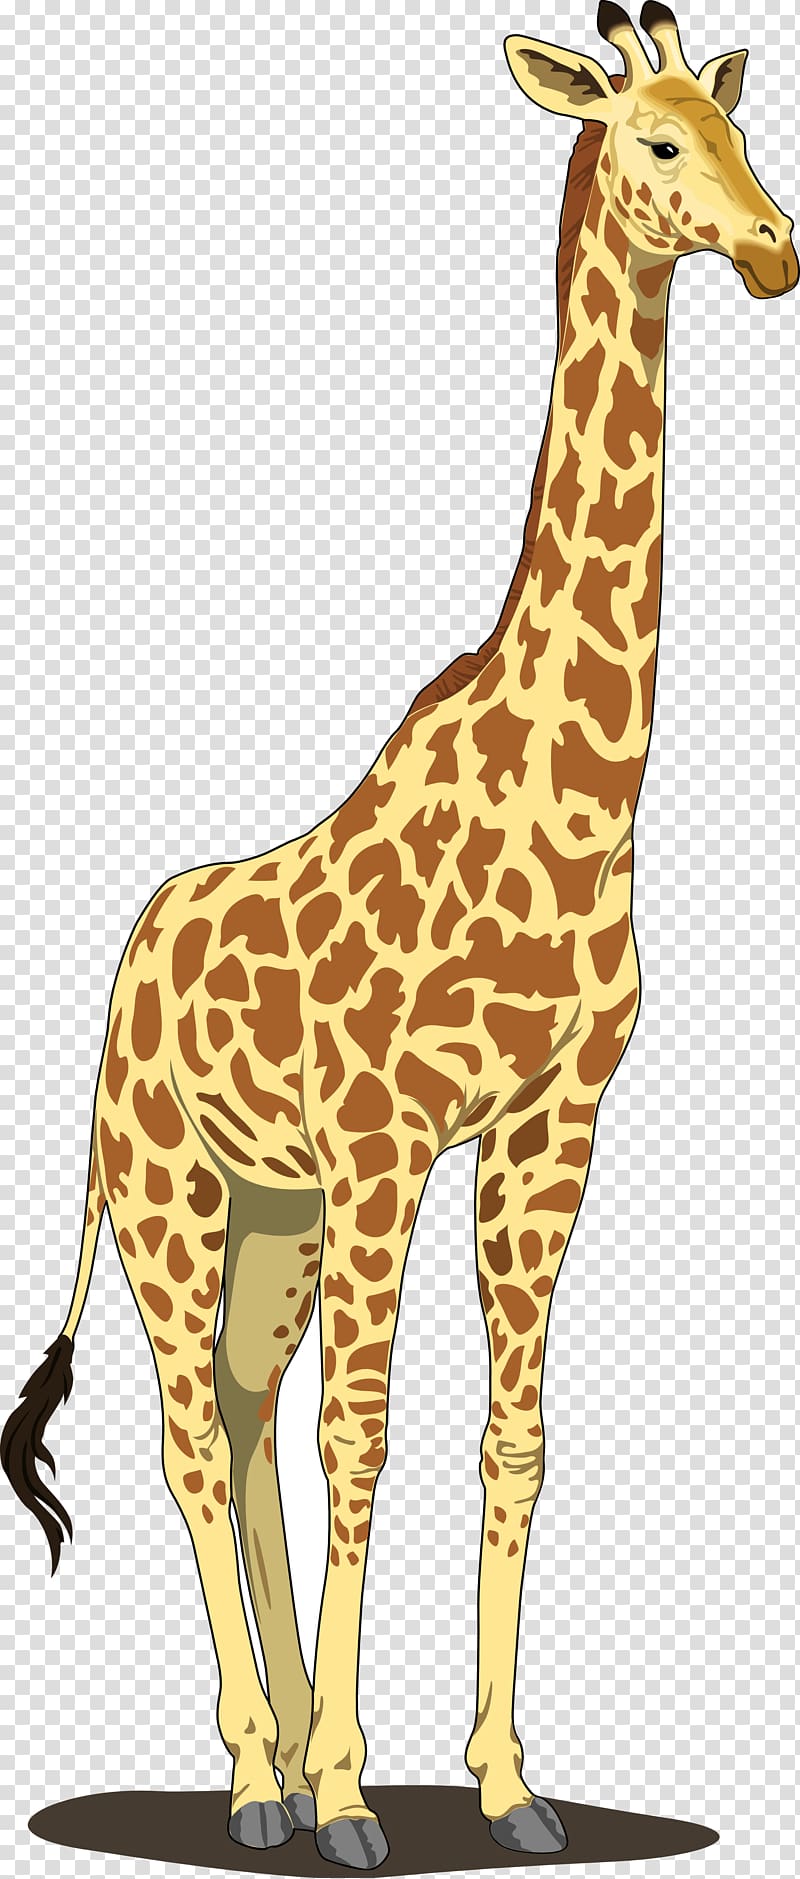 clipart giraffe transparent background